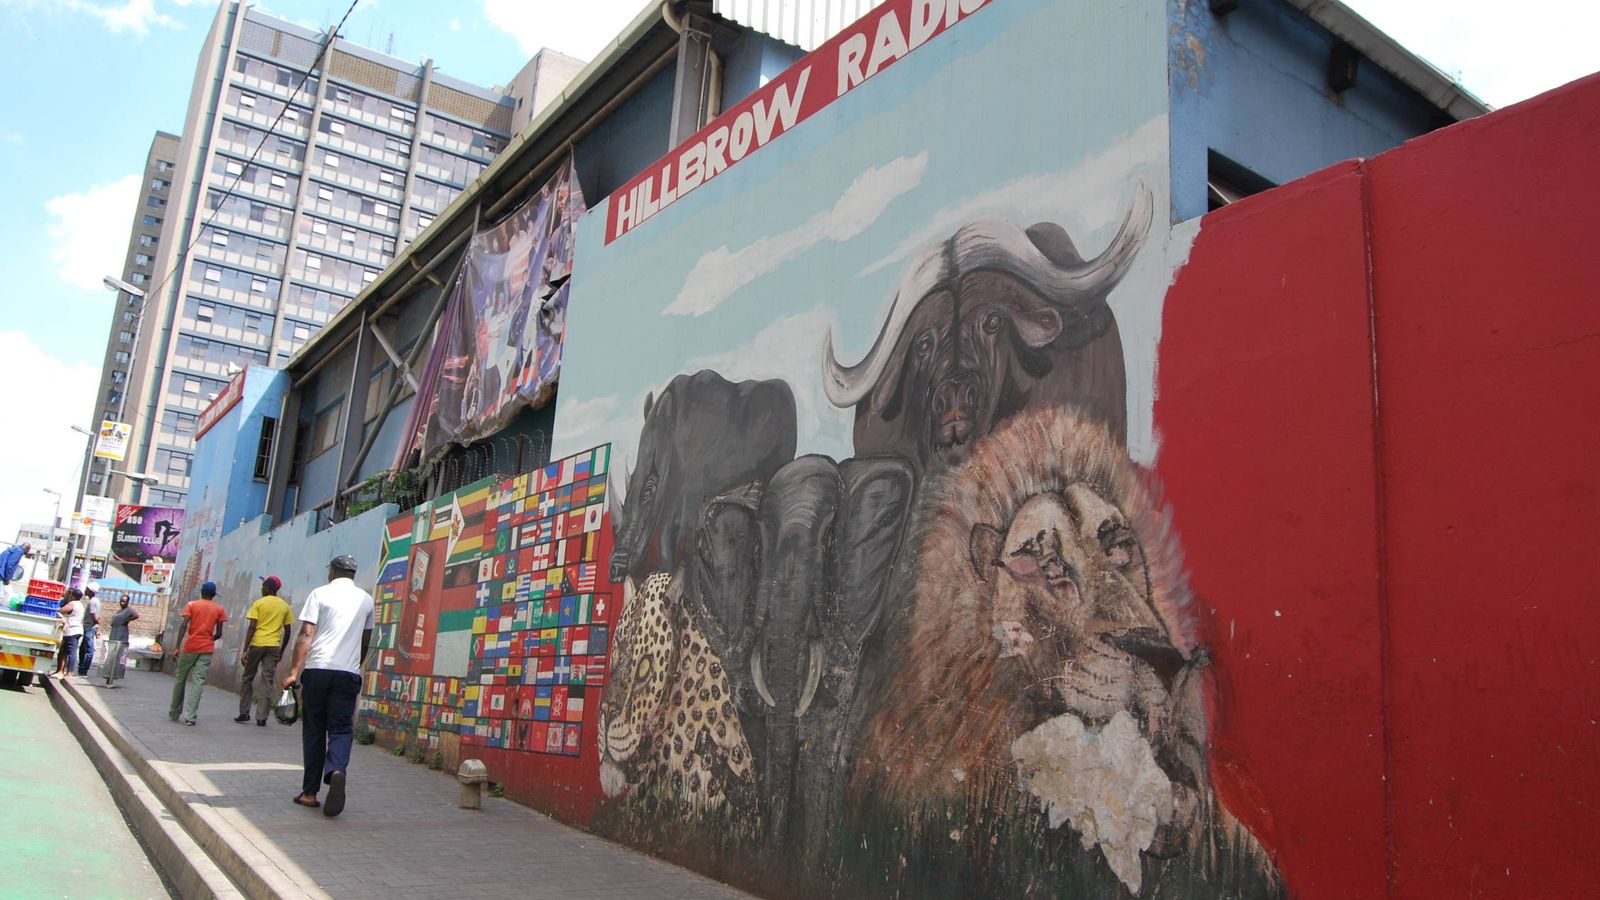 Foto: Mural en una calle del barrio de Hillbrow, en Johannesburgo. (Foto: Oratile Mokgatla)